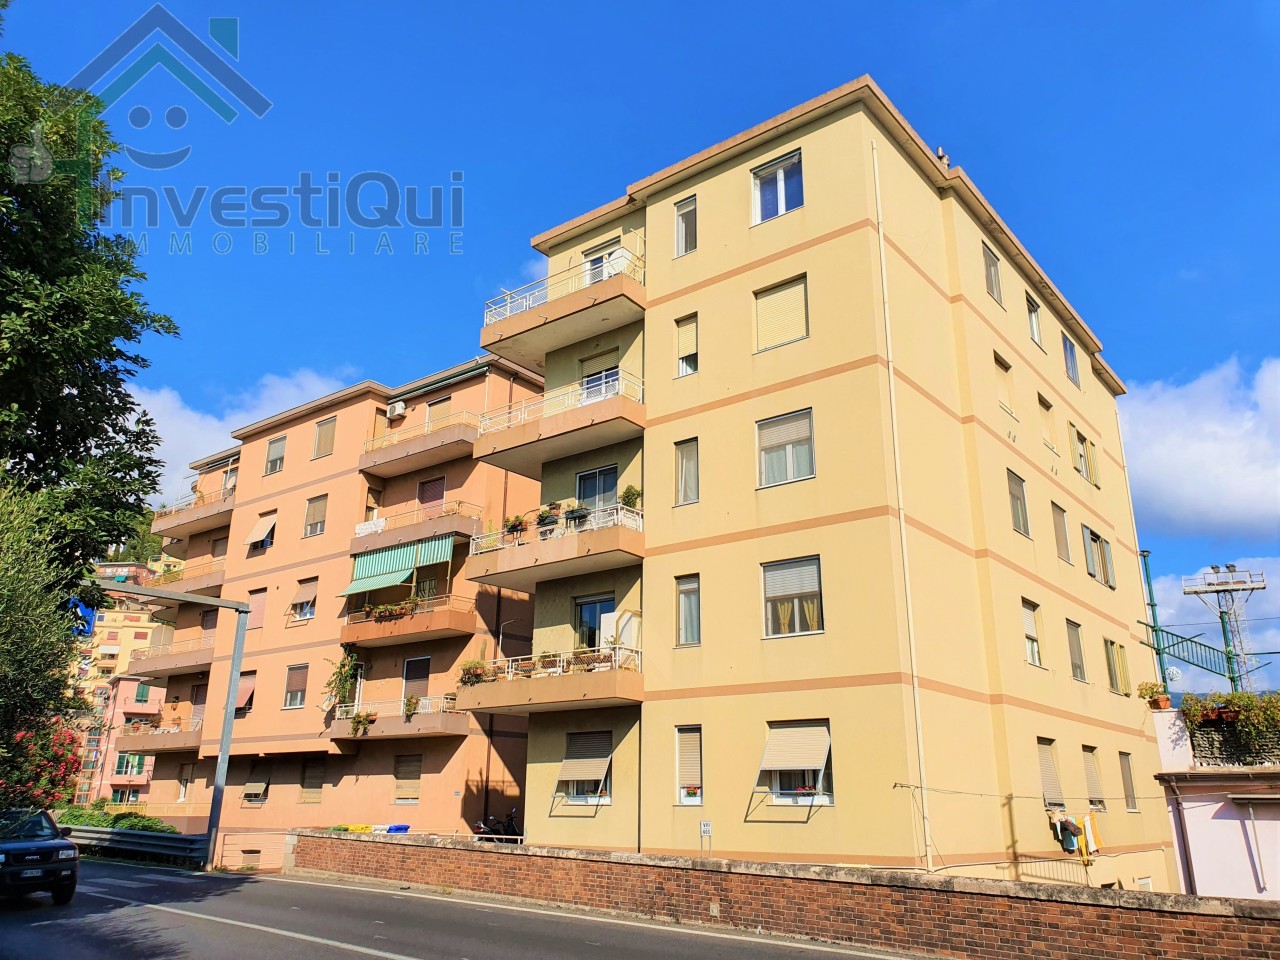 Appartamento in vendita a Pietra Ligure, 3 locali, prezzo € 159.000 | PortaleAgenzieImmobiliari.it